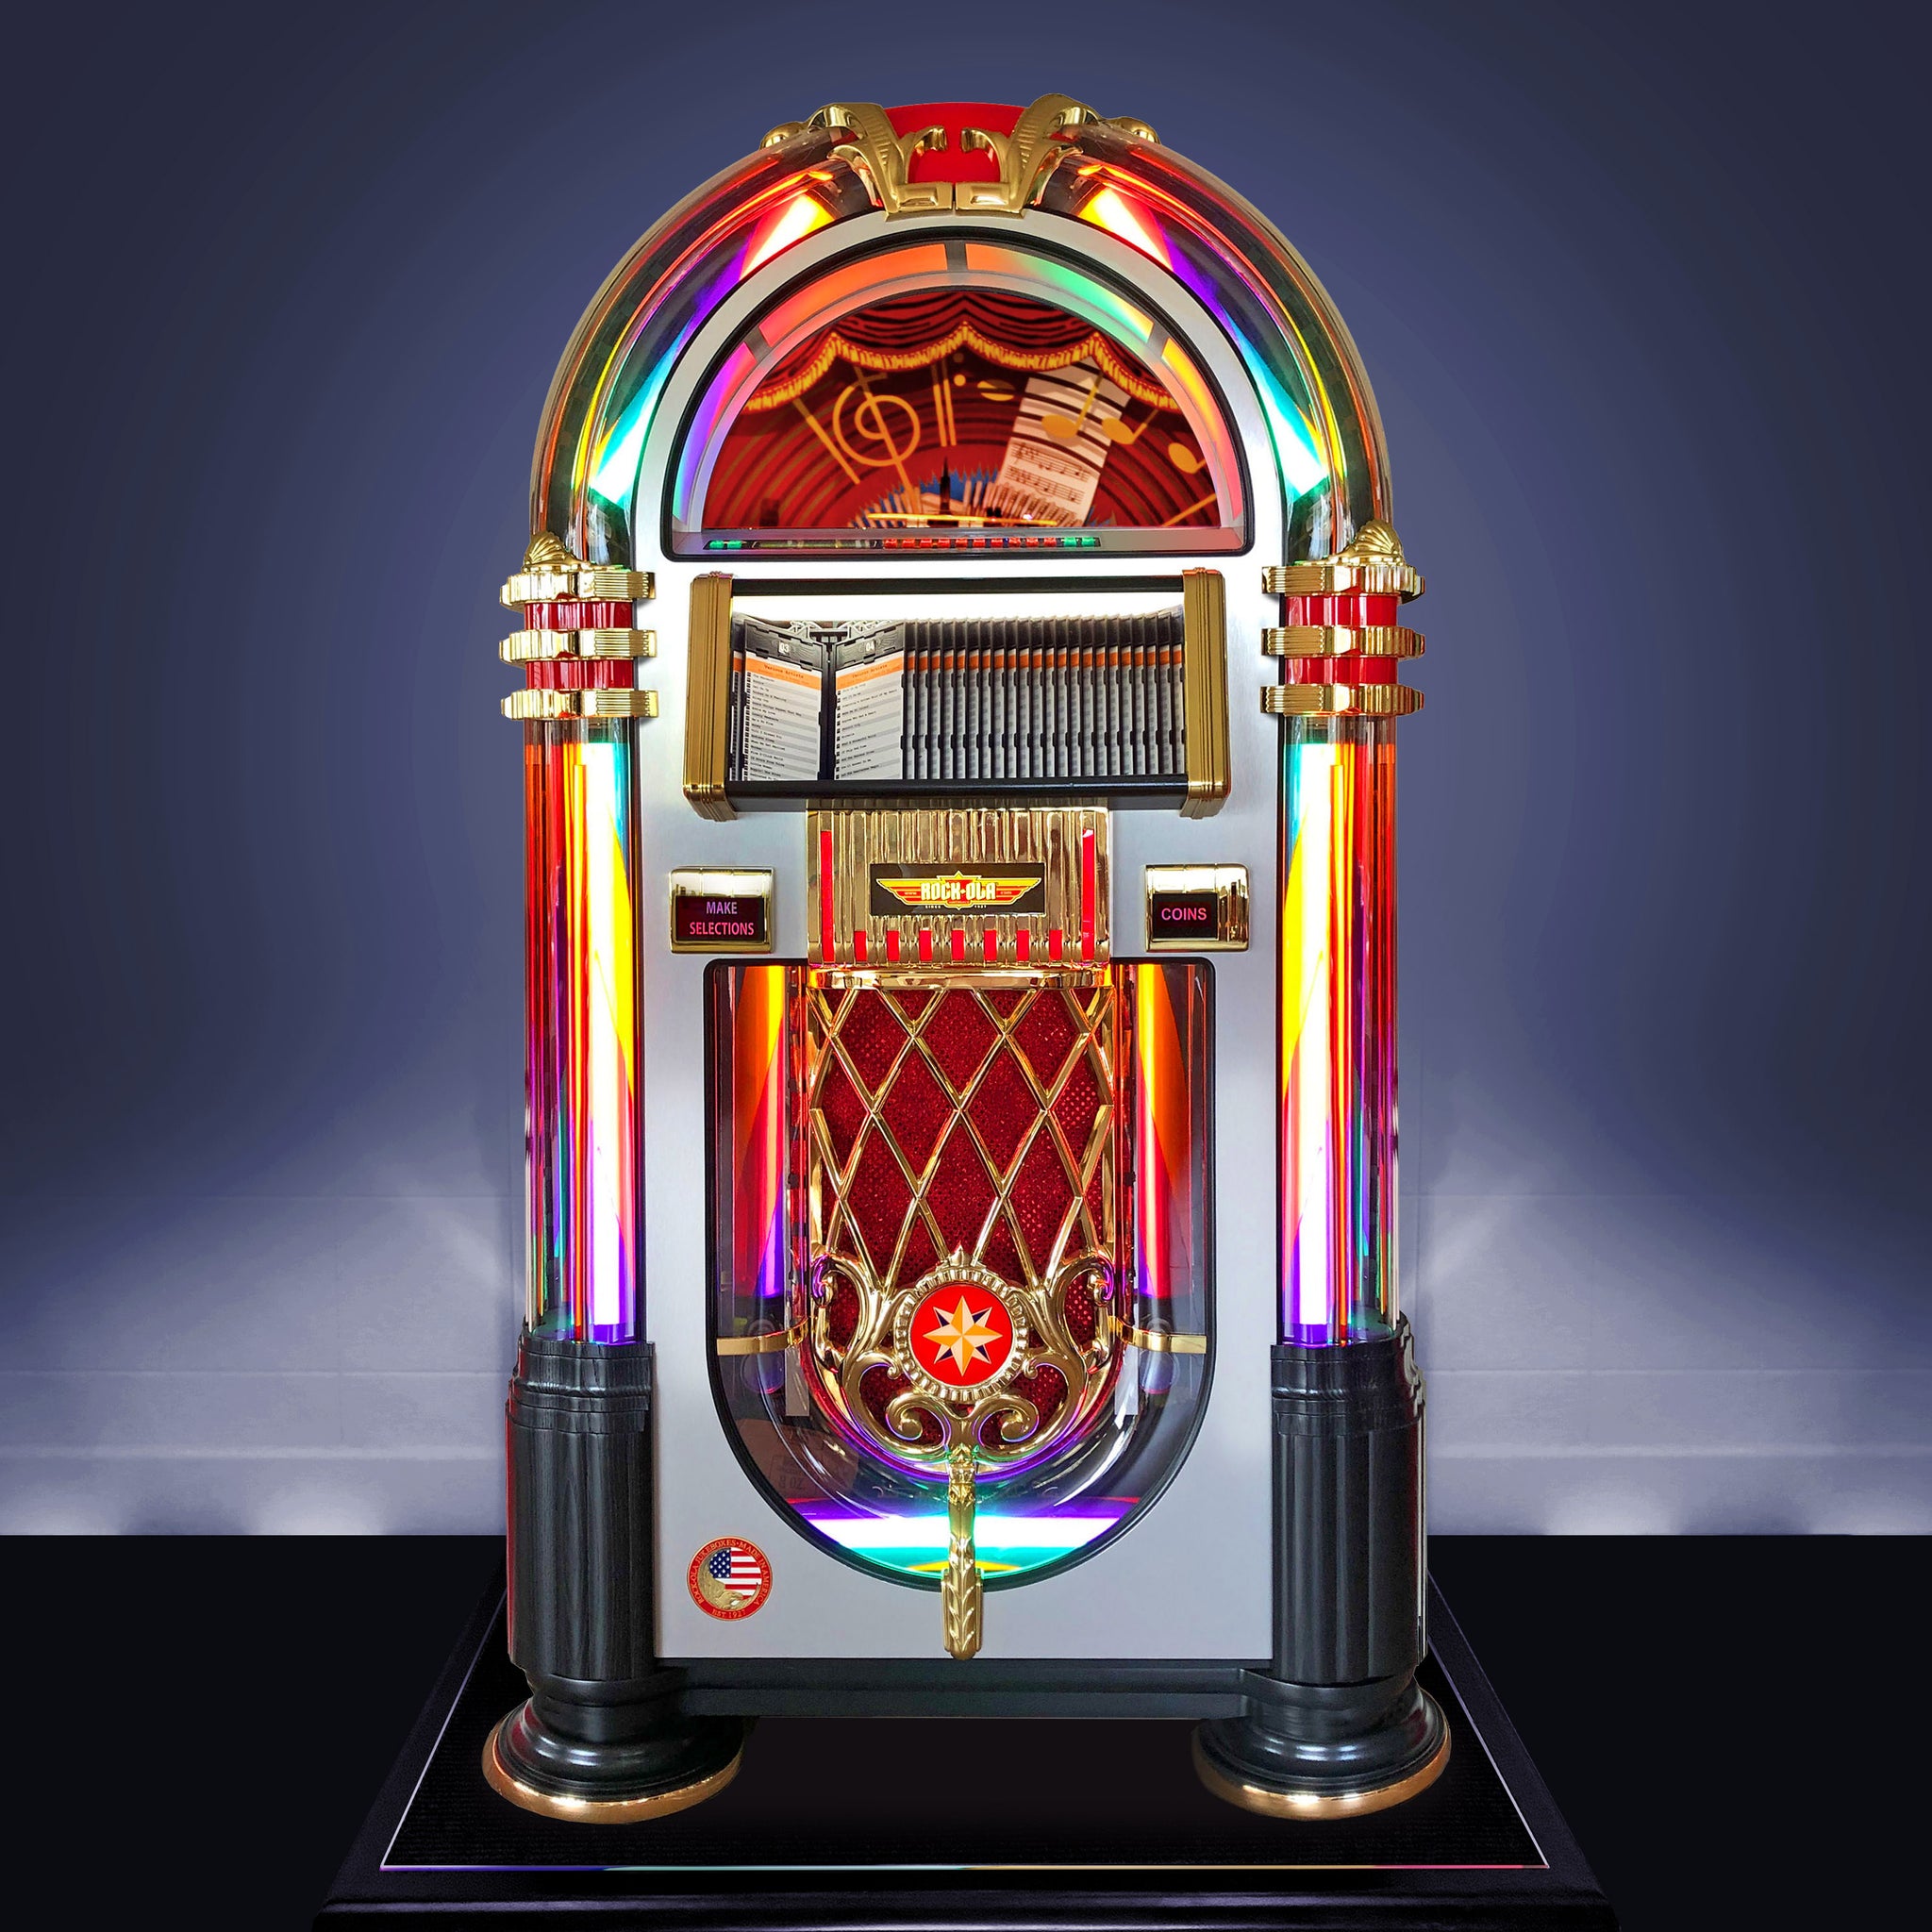 The 200,000 Song Rock-Ola Digital Jukebox - Hammacher Schlemmer